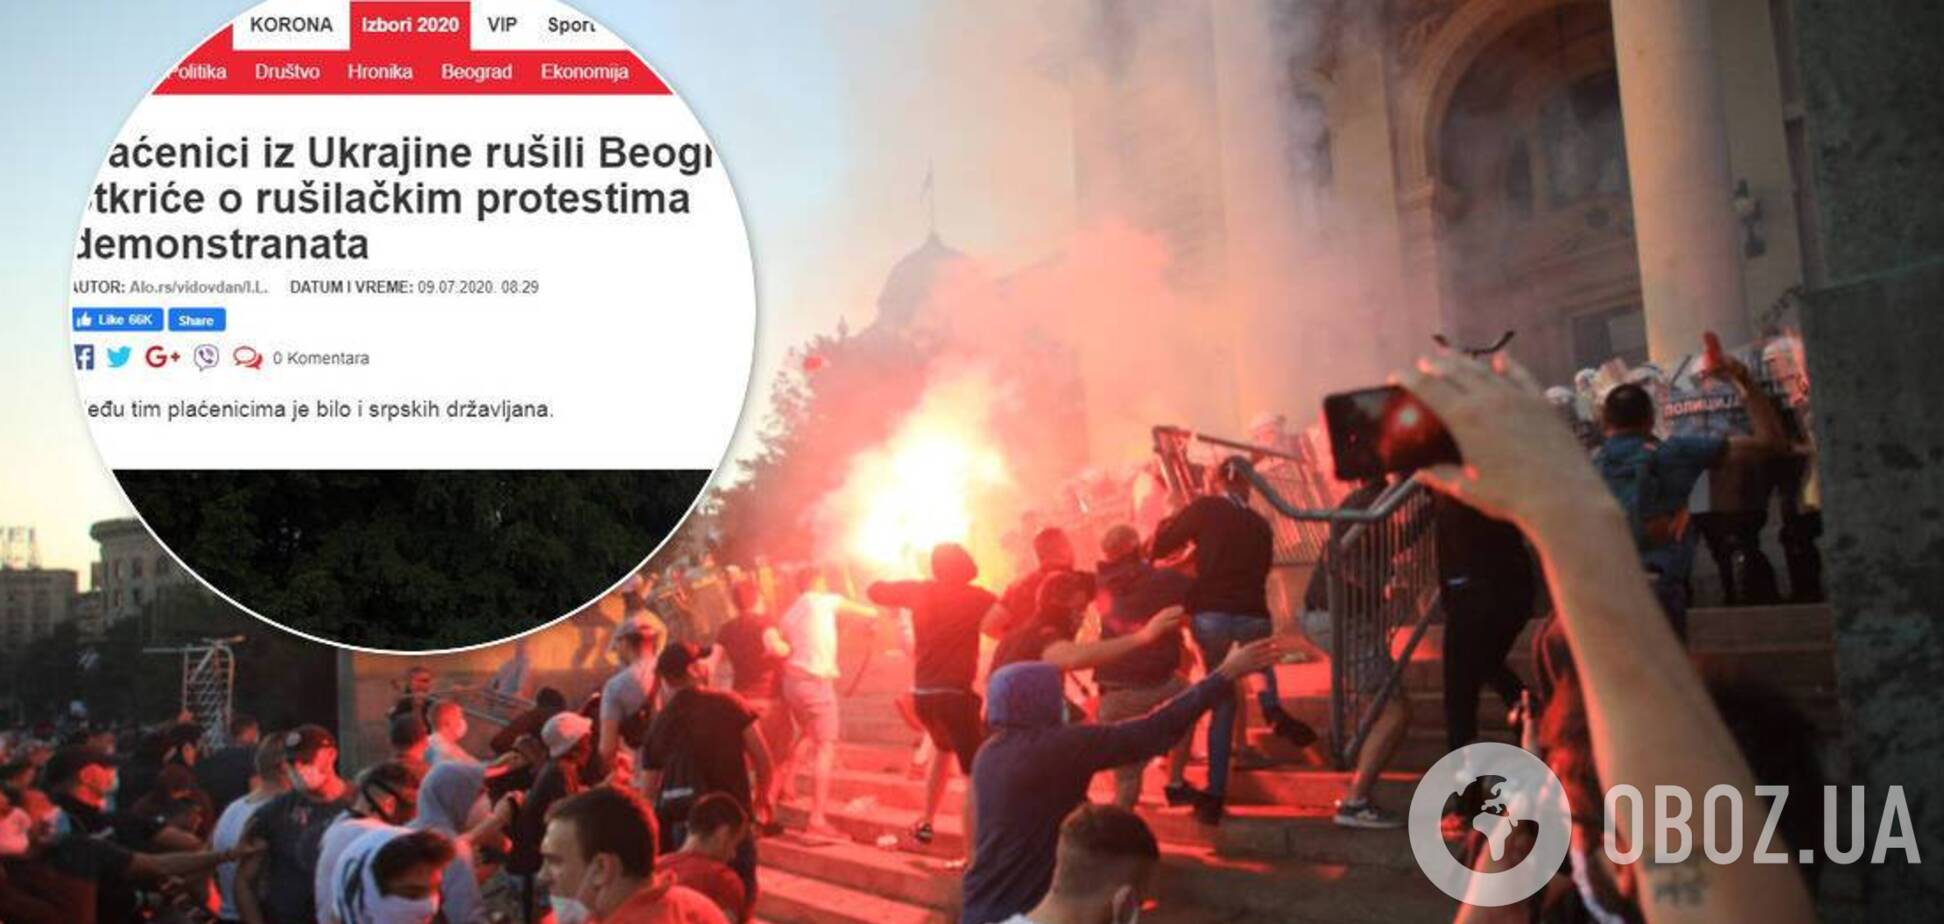 Сербські ЗМІ запустили фейк про 'українських найманців' під час заворушень у Белграді